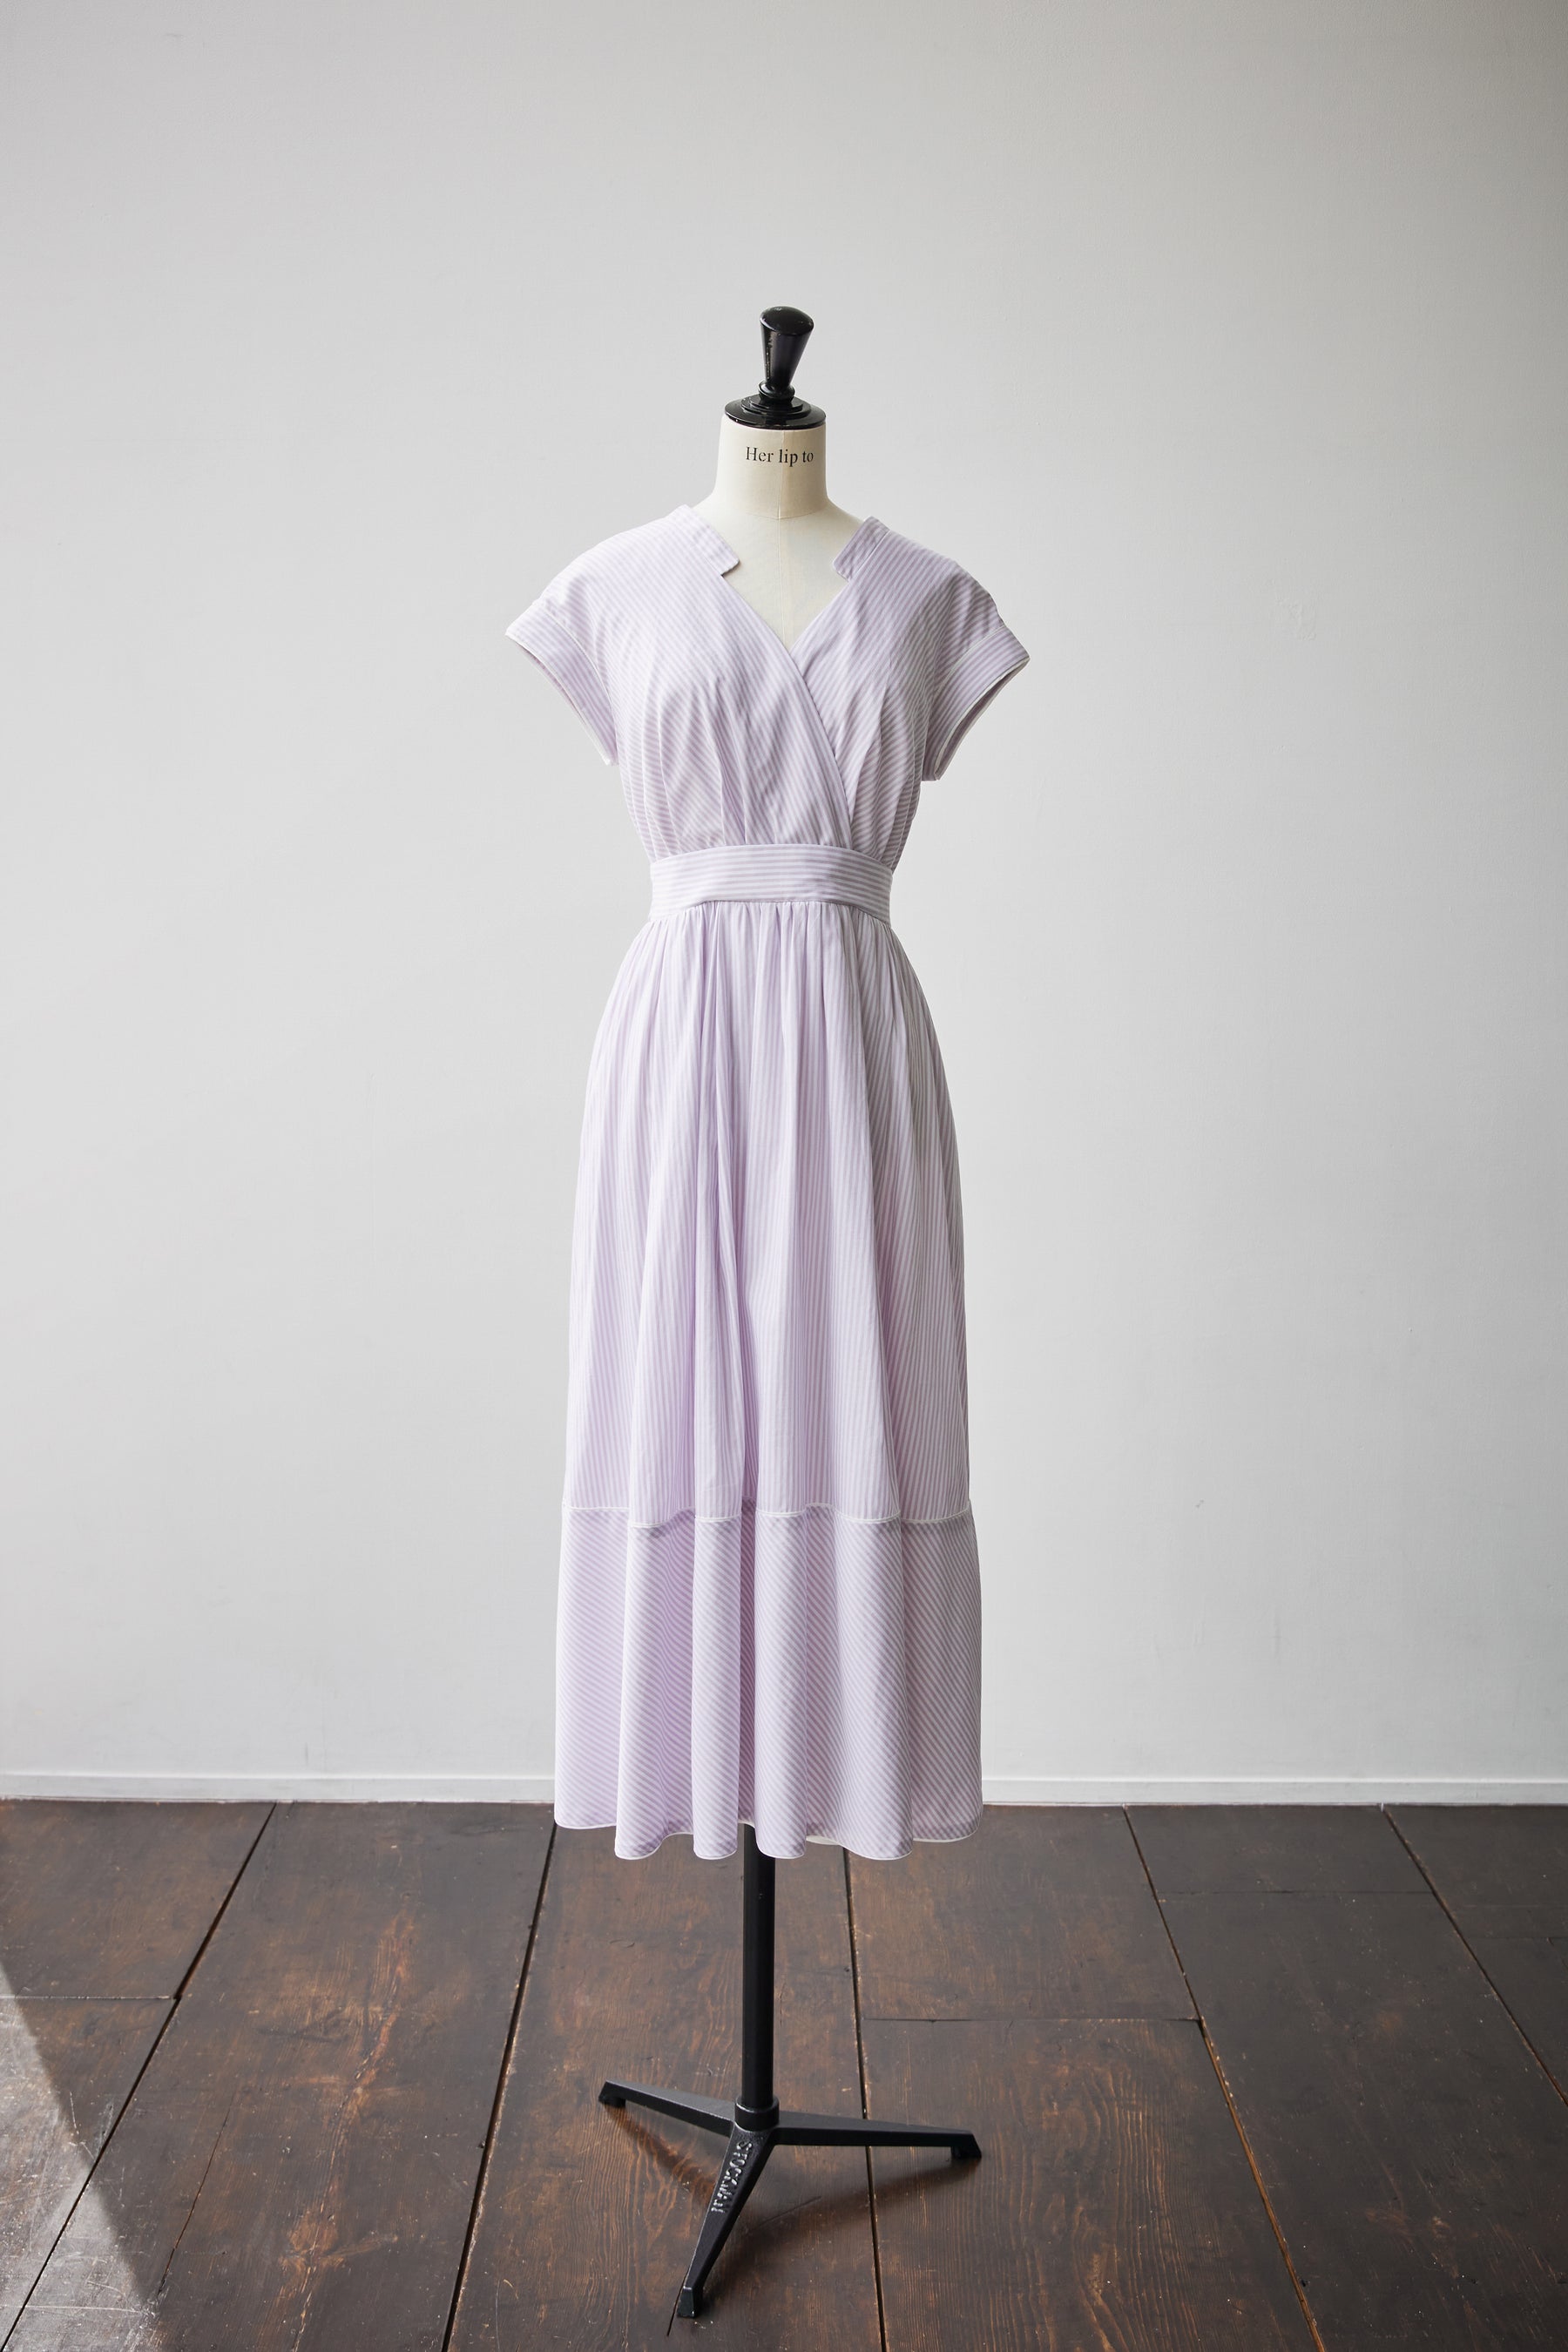 Striped Cotton-Blend Summer Dress